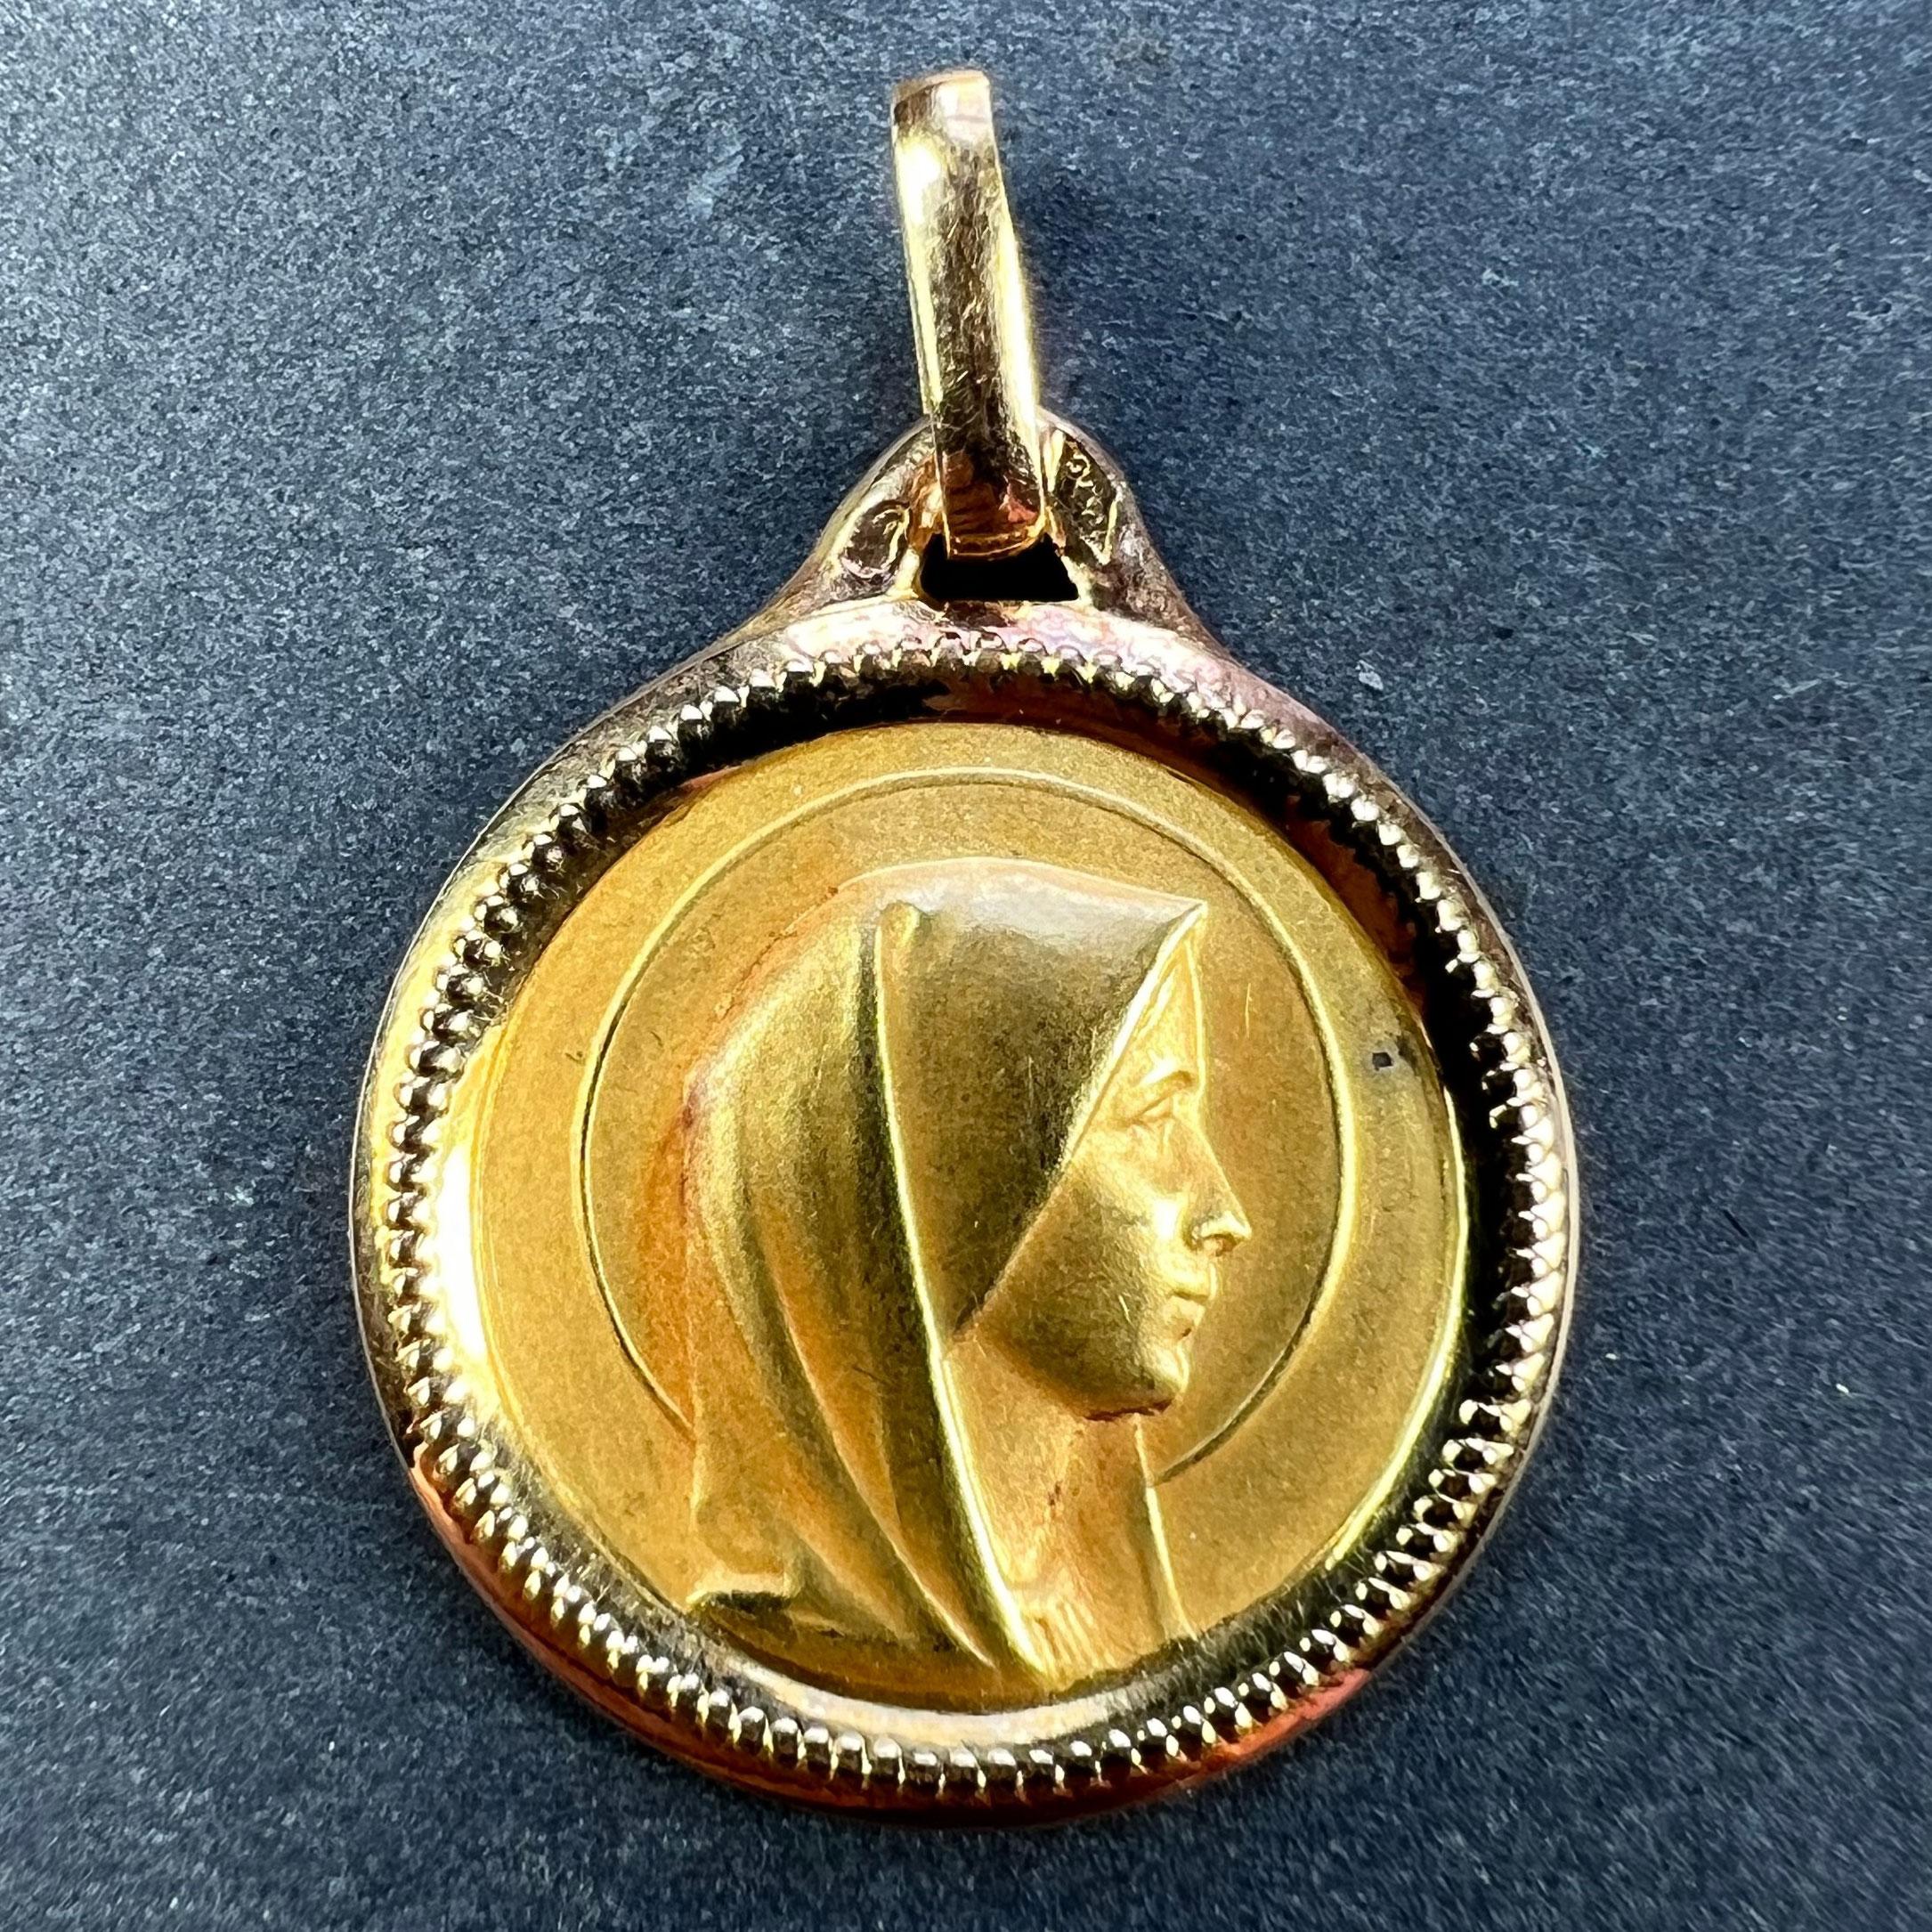 Ein französischer Anhänger aus 18 Karat (18K) Gelbgold in Form einer runden Medaille, die die Jungfrau Maria in einem Heiligenschein und einem Perlenrahmen darstellt. Gestempelt mit dem Adlerkopf für französische Herstellung und 18 Karat Gold, mit